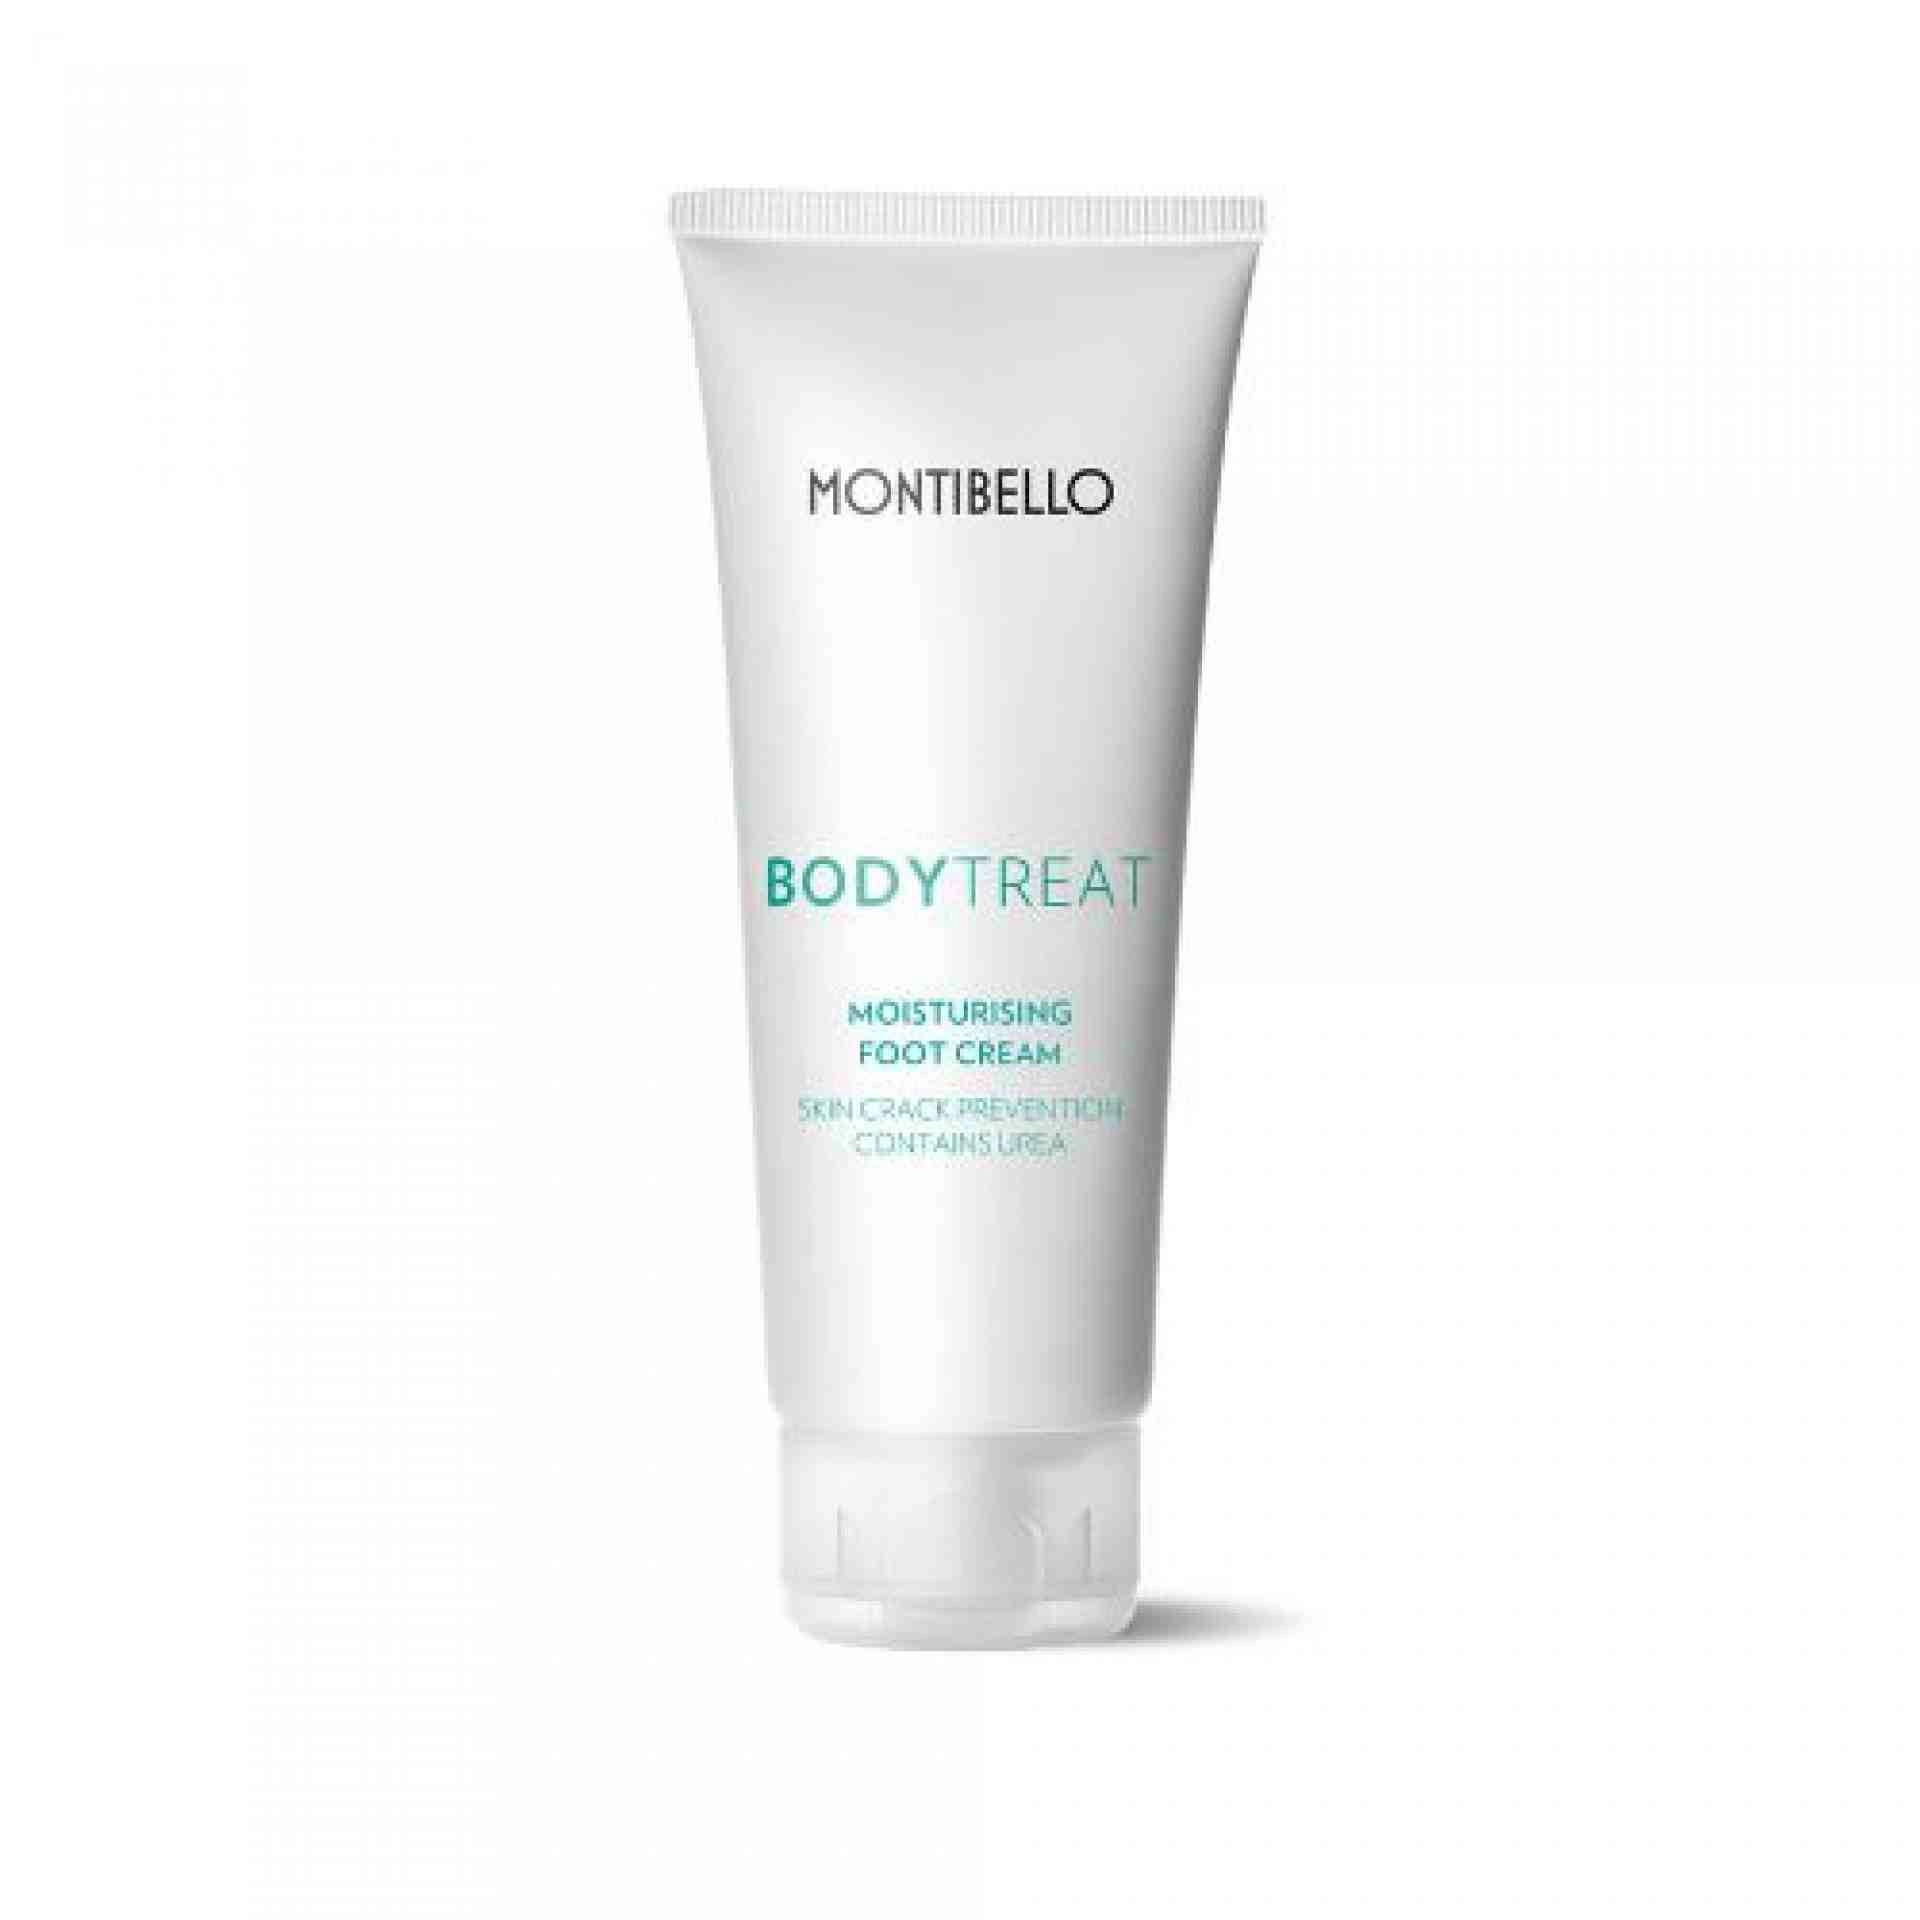 Moisturising Foot Cream | Crema Hidratante para Pies 100ml - Body Treat - Montibello ®